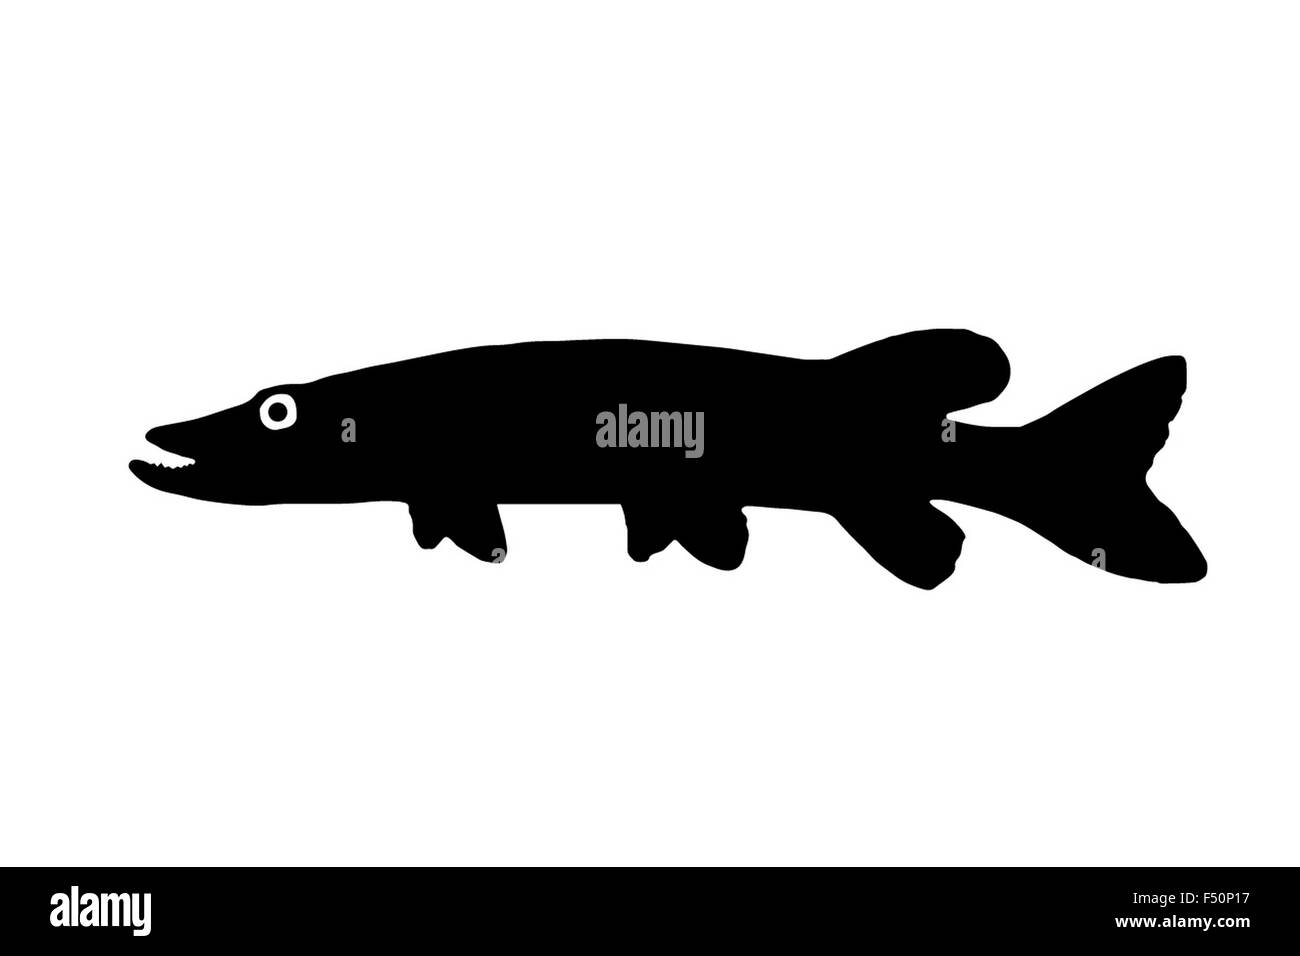 Die Silhouette der Fische Raubfische Hecht Süßwasserfische, die in klaren Seen und Flüssen lebt. Stockfoto